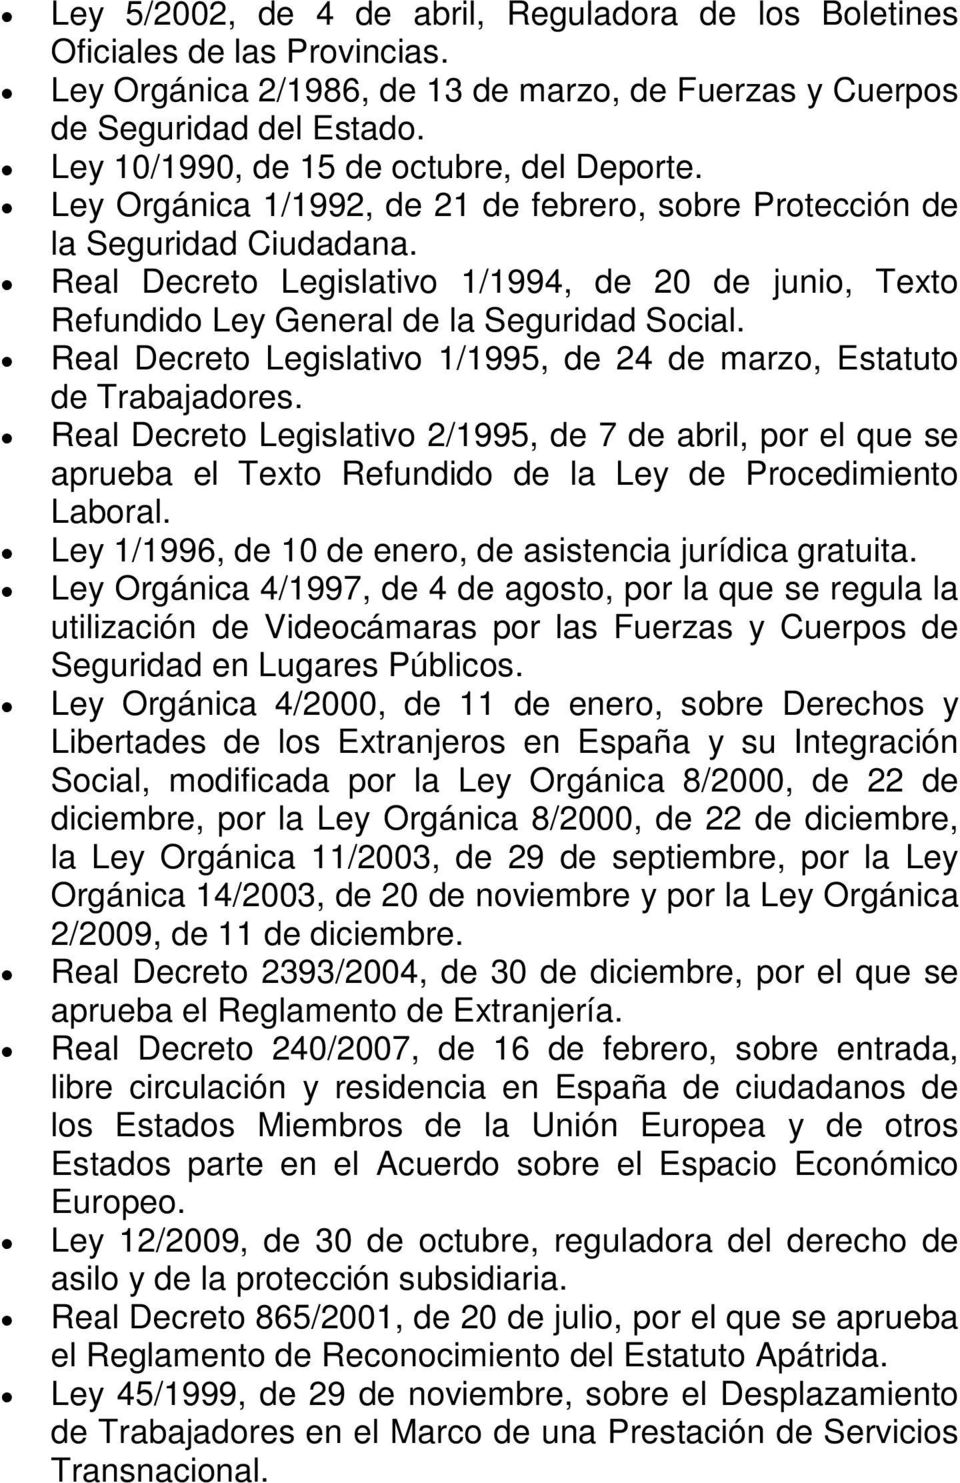 Real Decreto Legislativo 1/1994, de 20 de junio, Texto Refundido Ley General de la Seguridad Social. Real Decreto Legislativo 1/1995, de 24 de marzo, Estatuto de Trabajadores.